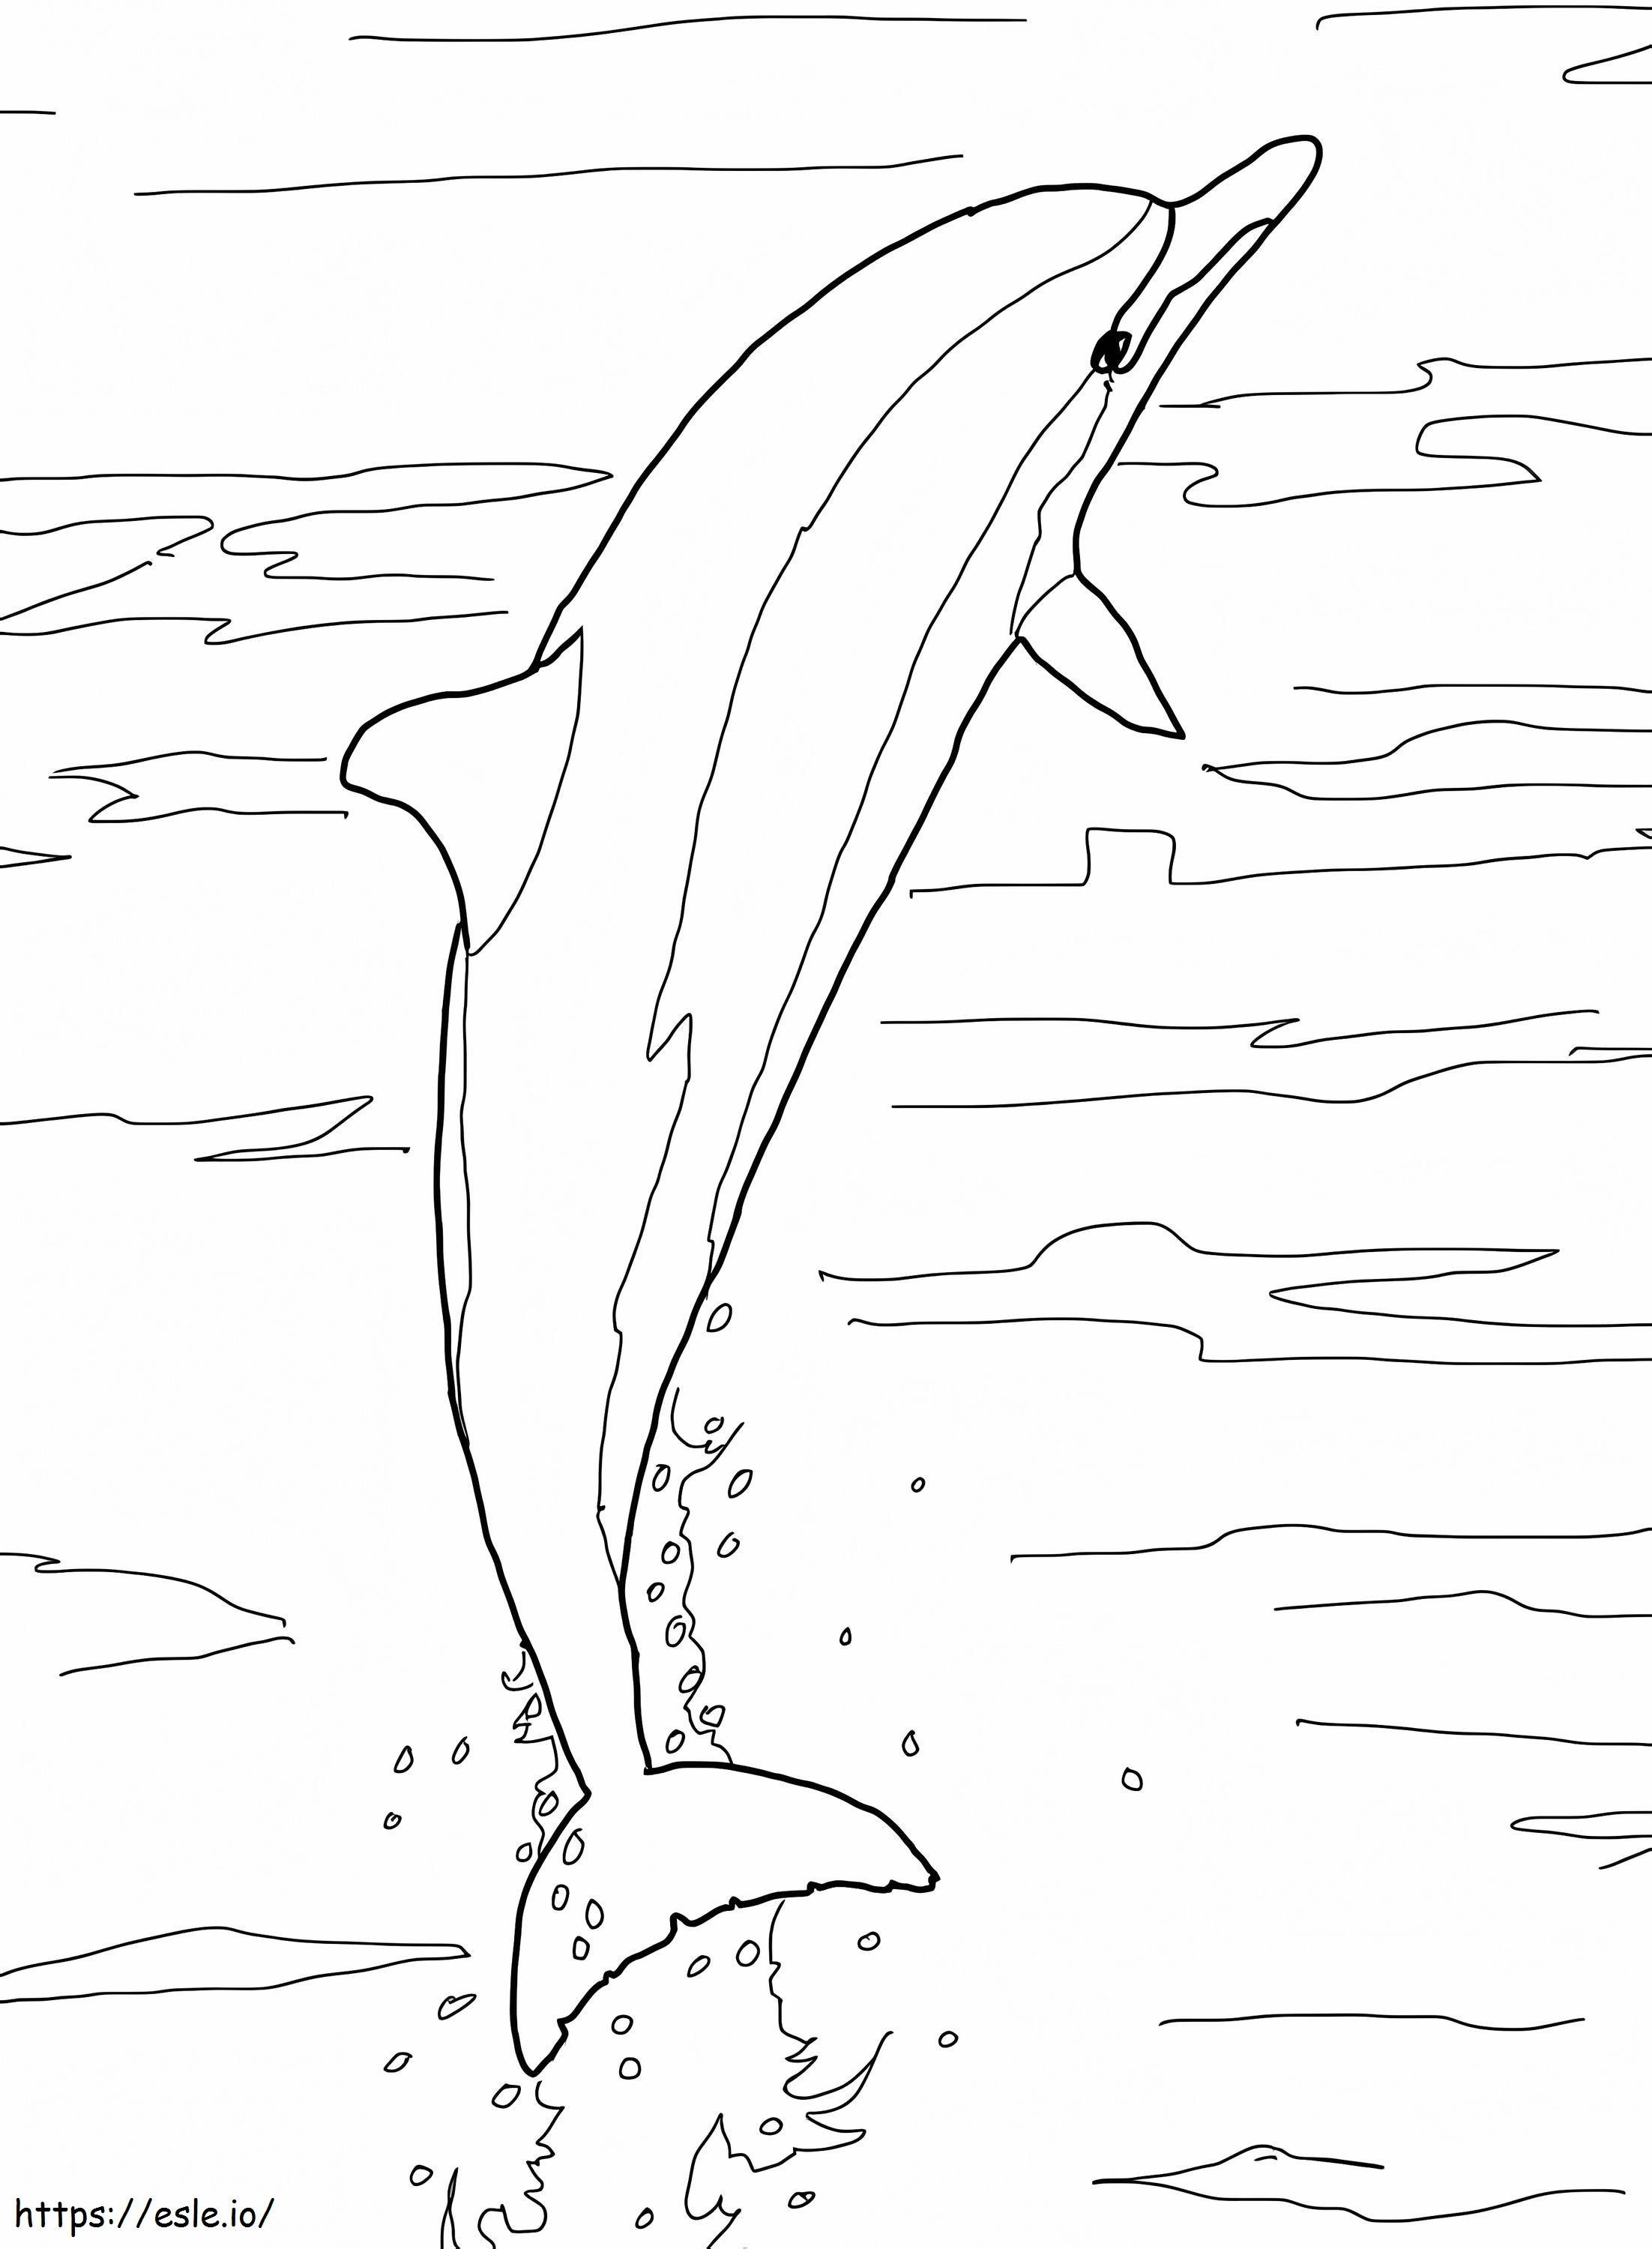 Salto del delfín de pico largo para colorear